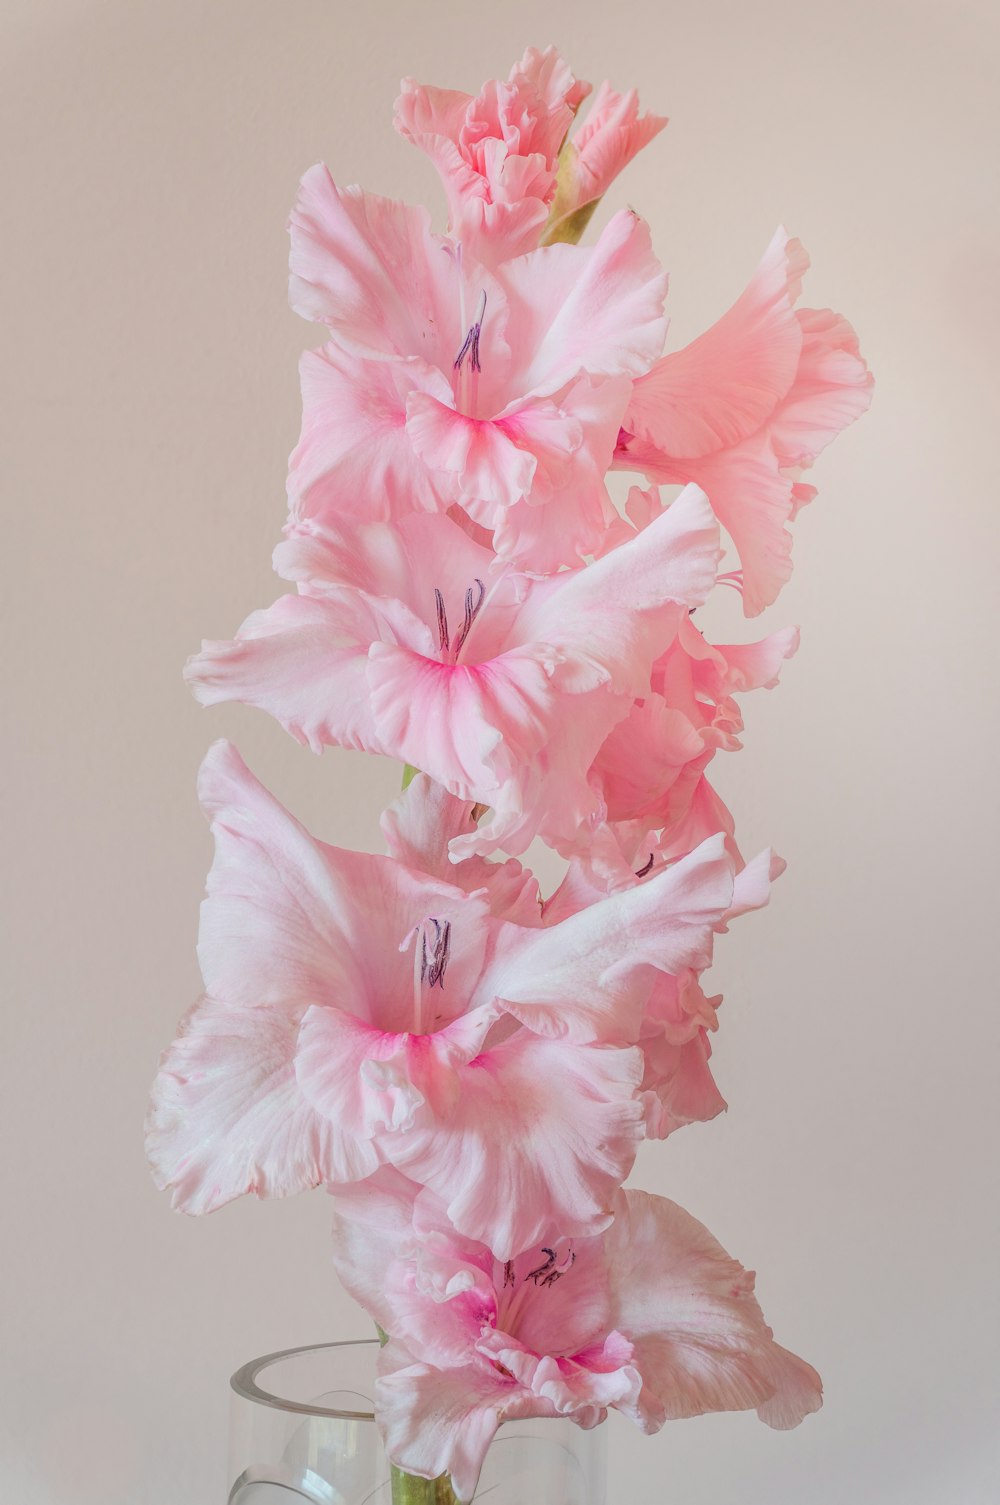 hibiscus rose en fleur photo en gros plan